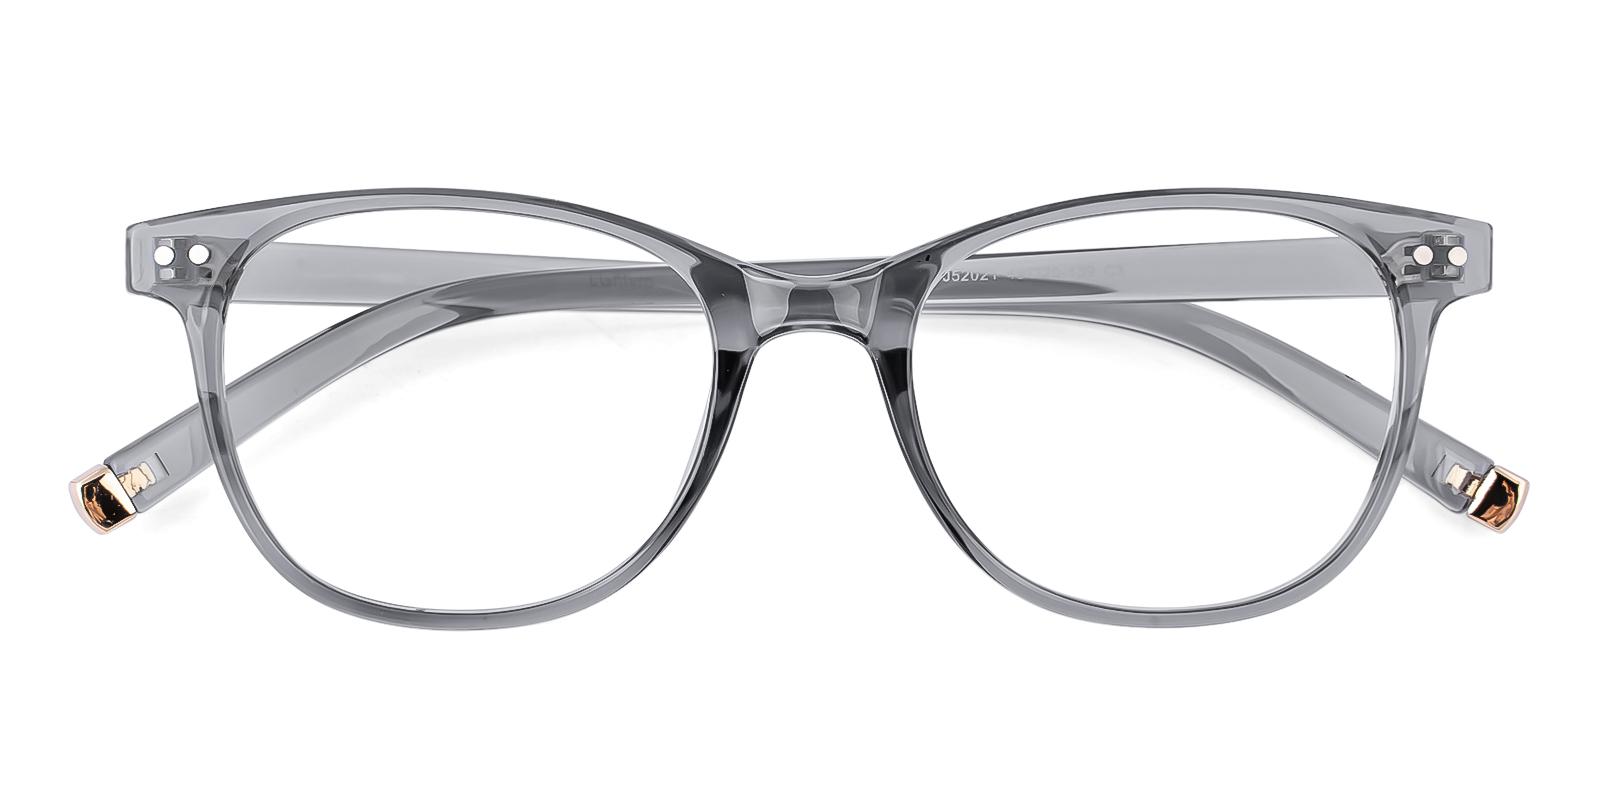 Vesic Gray Plastic Eyeglasses , UniversalBridgeFit Frames from ABBE Glasses